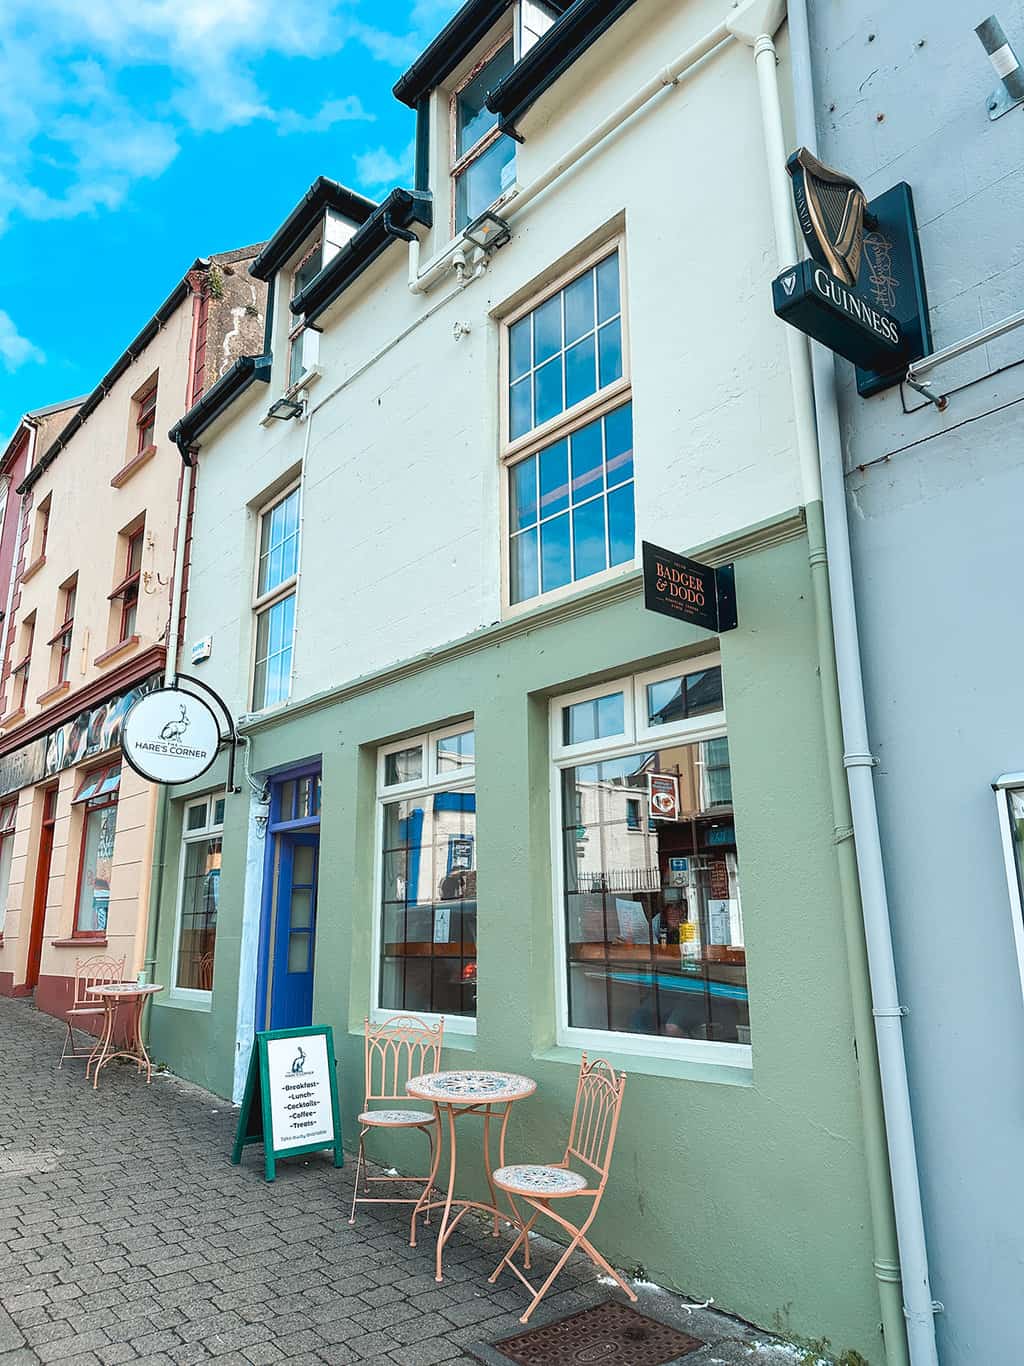 Hares Corner Restaurants in Dingle Ireland